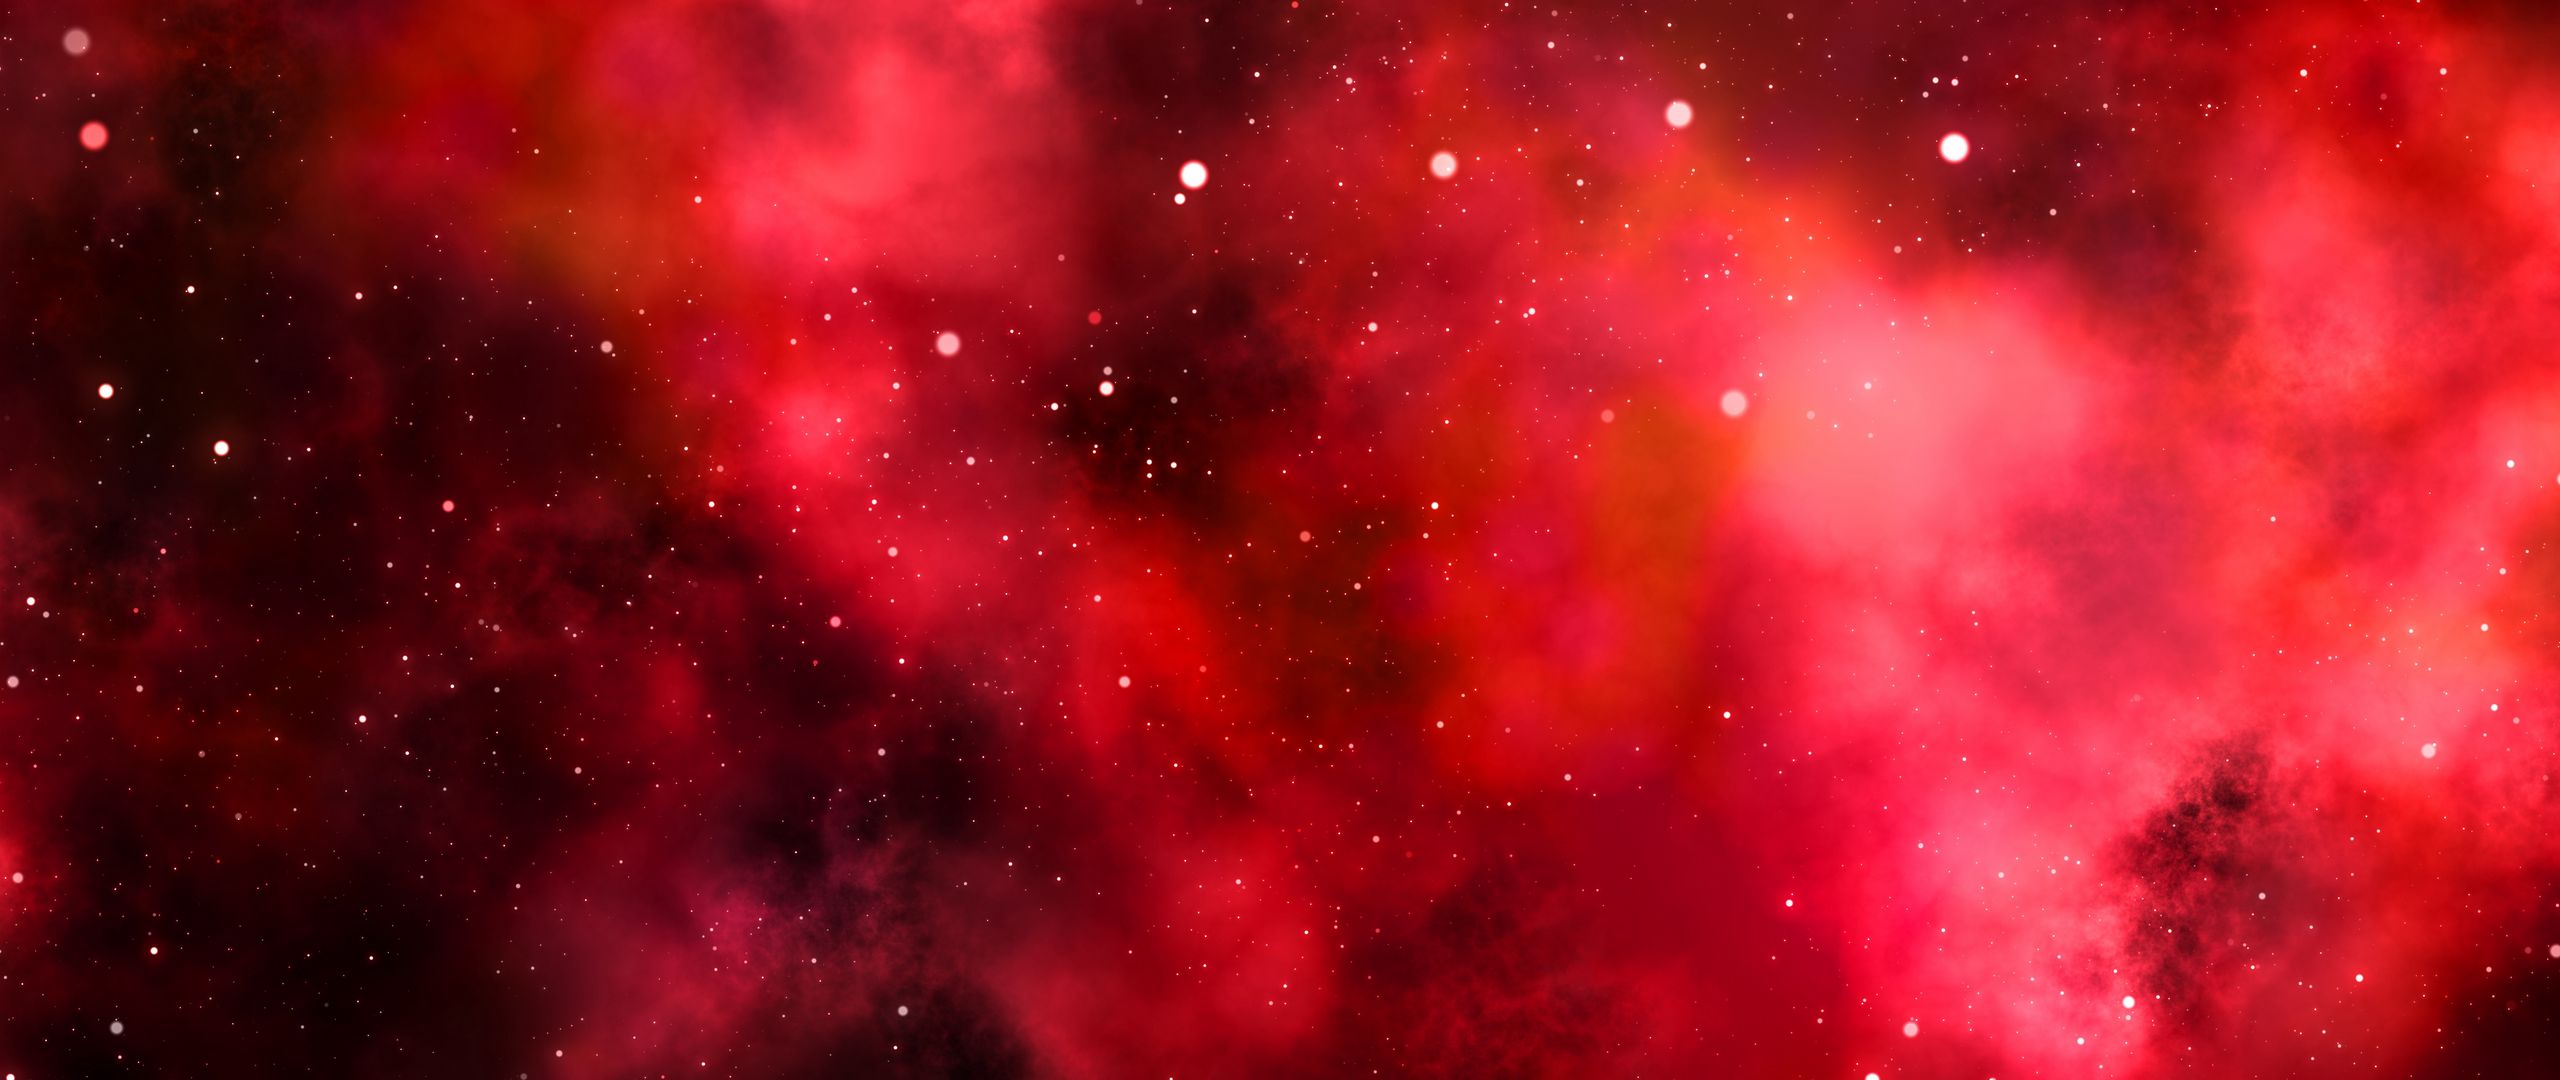 ギャラクシーs7壁紙hd 1080p,星雲,赤,天体,ピンク,空